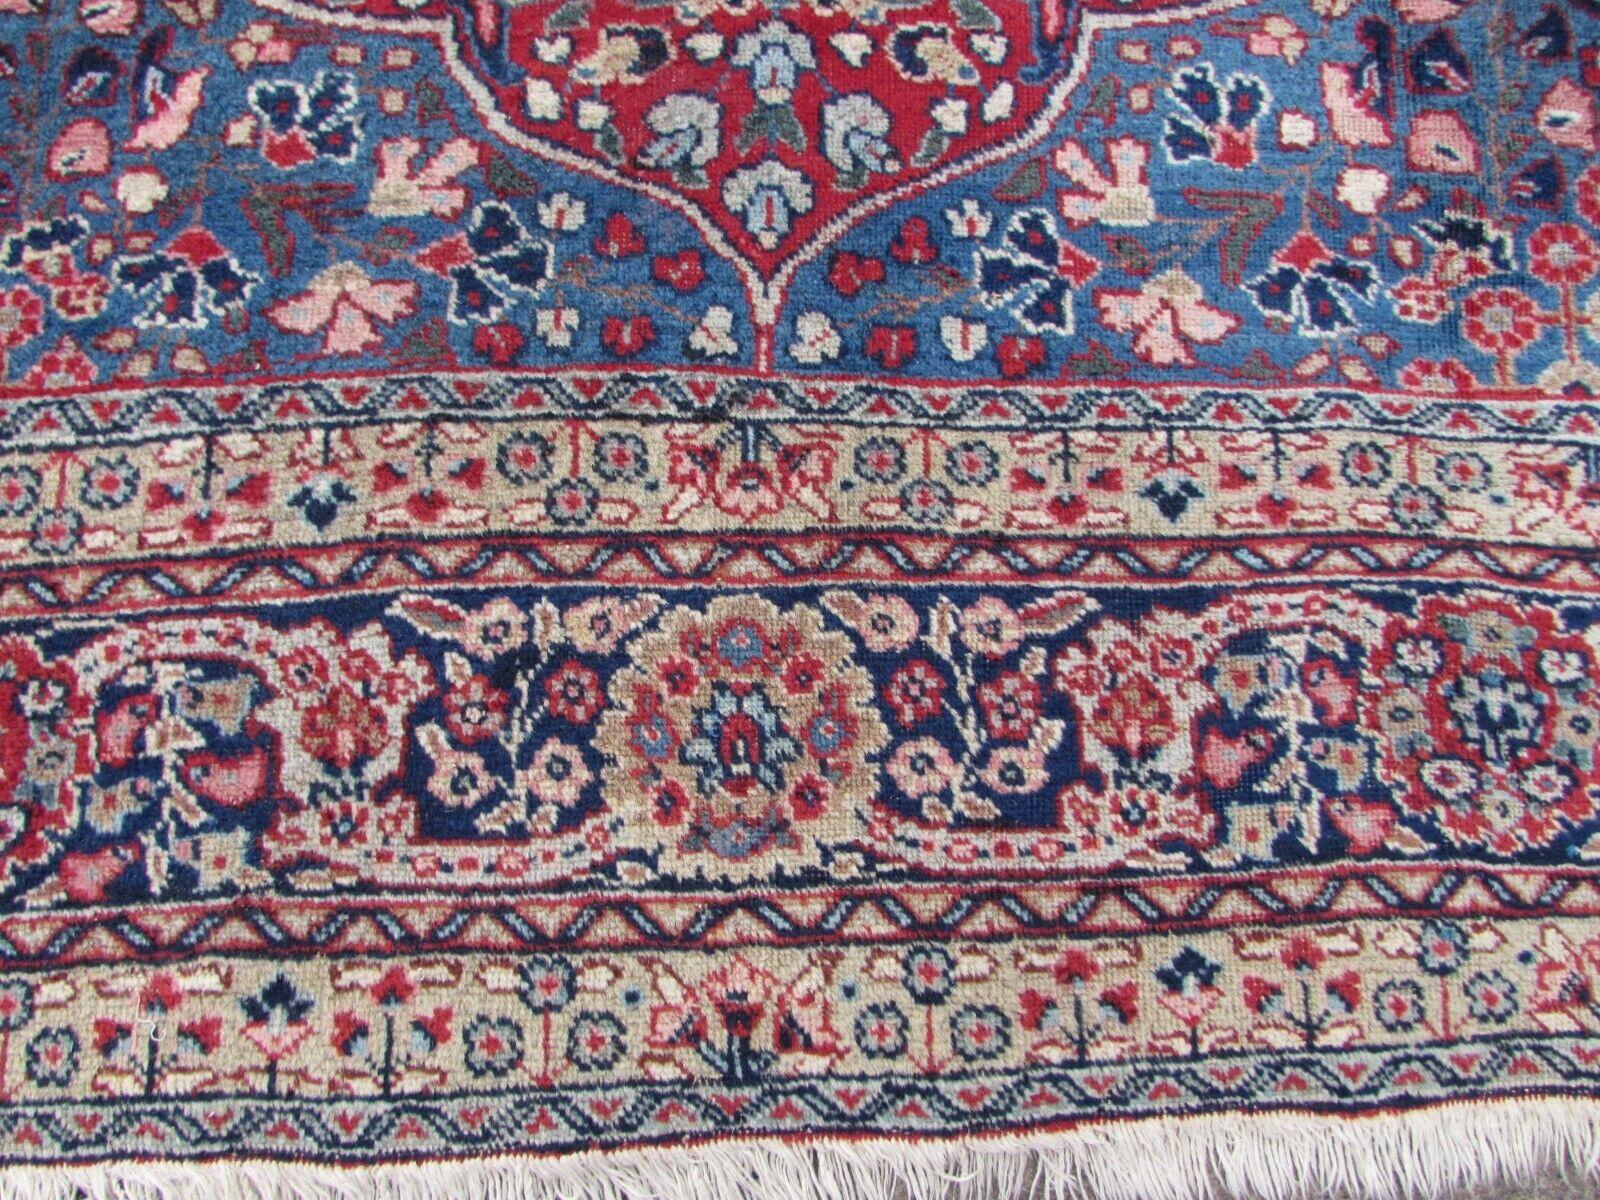 Erhöhen Sie die Schönheit Ihres Wohnraums mit diesem handgefertigten Kazvin-Teppich im persischen Vintage-Stil. Dieser exquisite, in den 1970er Jahren gefertigte Teppich misst 9,3' x 12,3' und ist damit eine perfekte Ergänzung für jeden